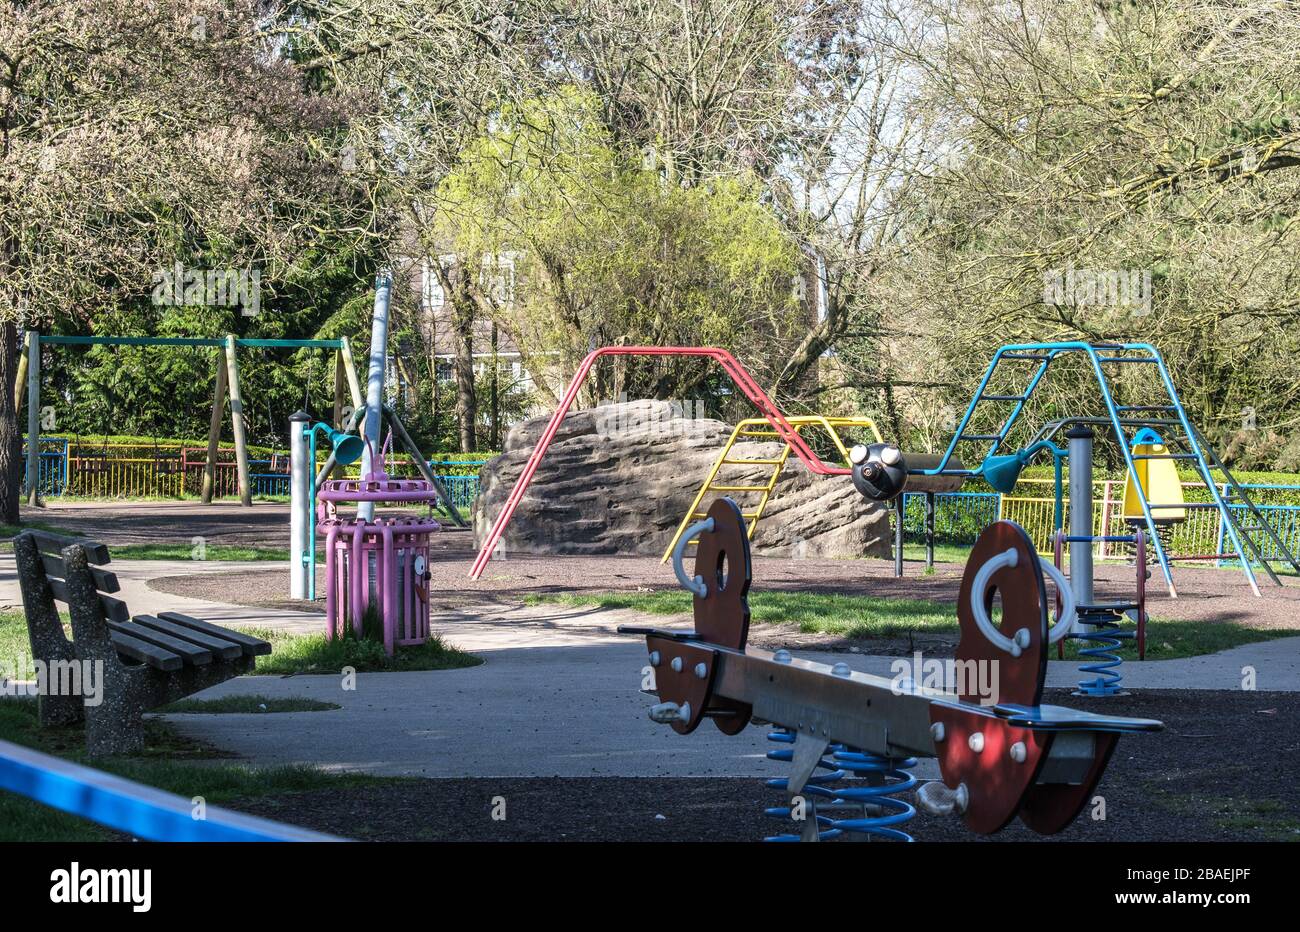 Parque infantil vacío en el Pinner Memorial Park, como resultado del distanciamiento social durante la pandemia de Coronavirus Covid19, marzo de 25, Harrow 2020, Londres, Inglaterra, Reino Unido Foto de stock